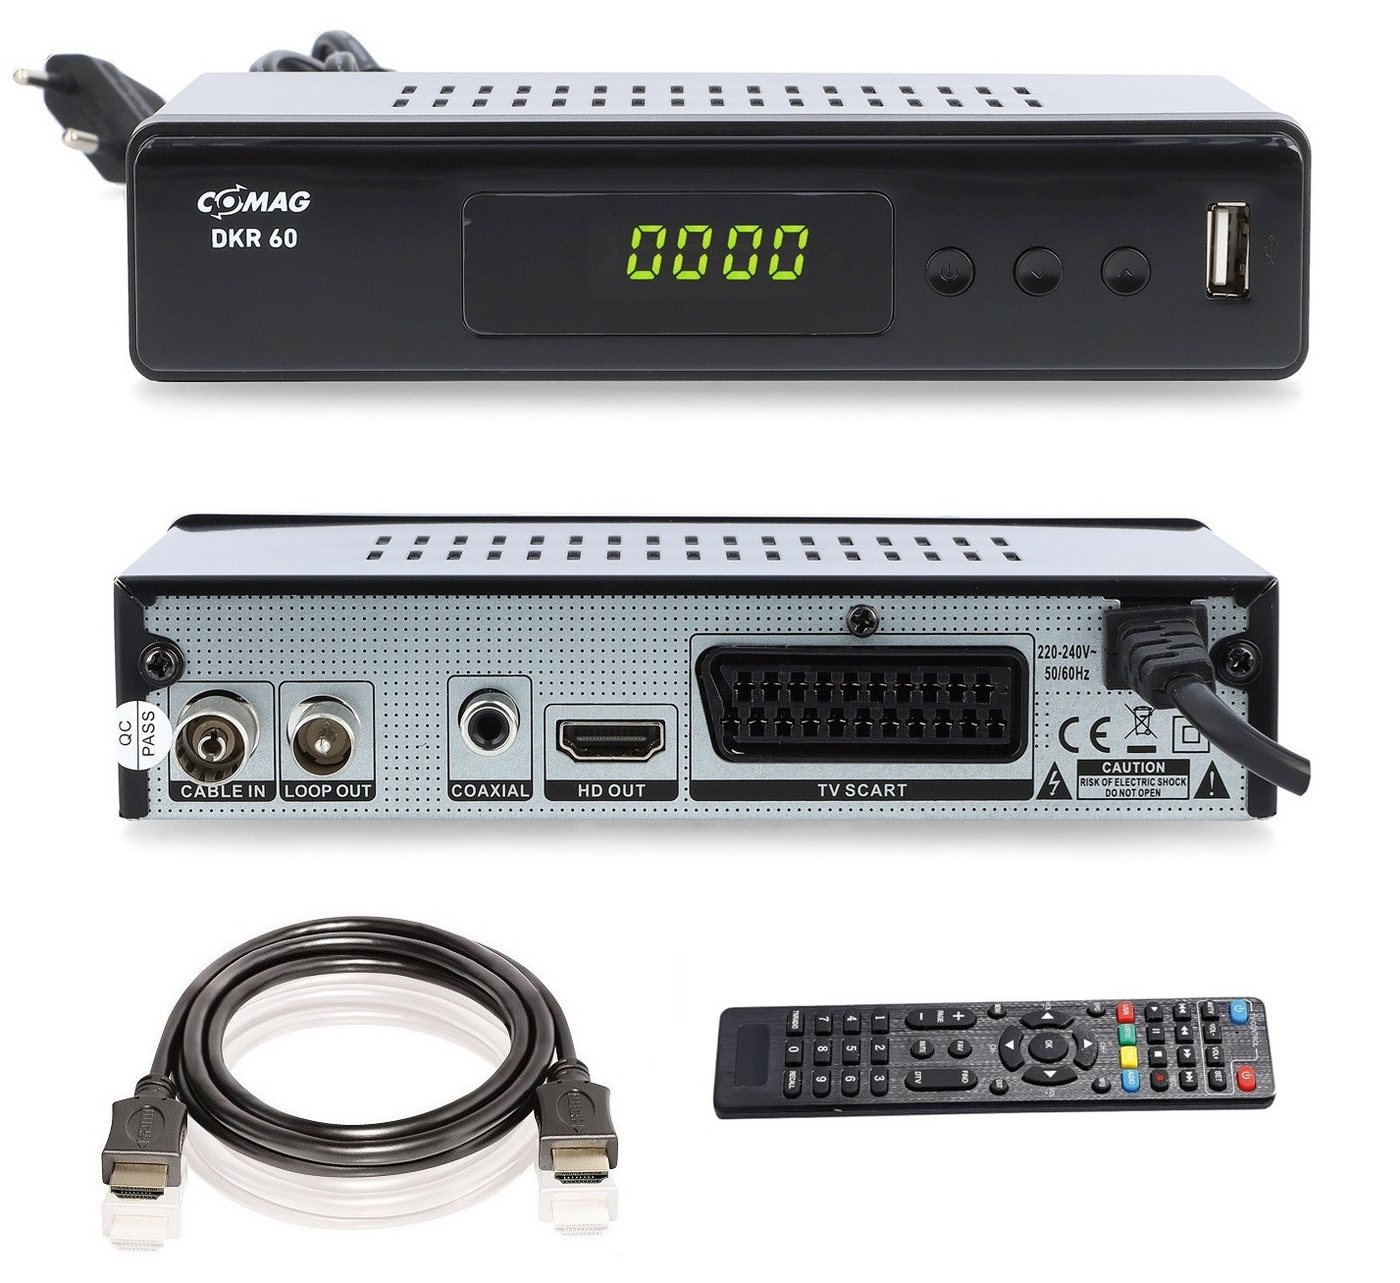 Comag COMAG DKR 60 HD digitaler Full HD Kabel-Receiver (PVR Ready, HDTV, Kabel-Receiver von Comag